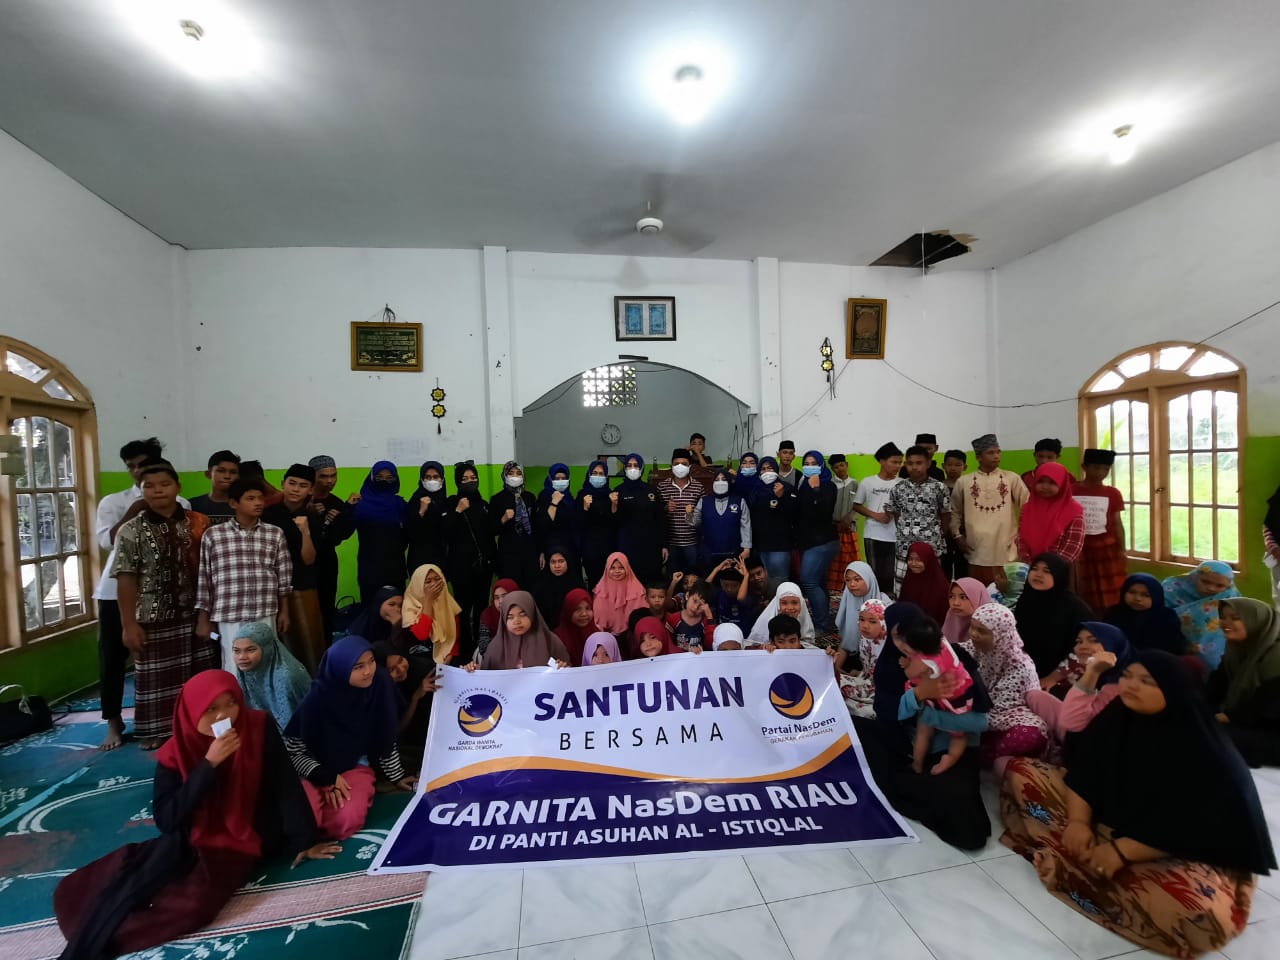 Garnita NasDem Riau Serahkan Santunan di Panti Asuhan Al Istiklal